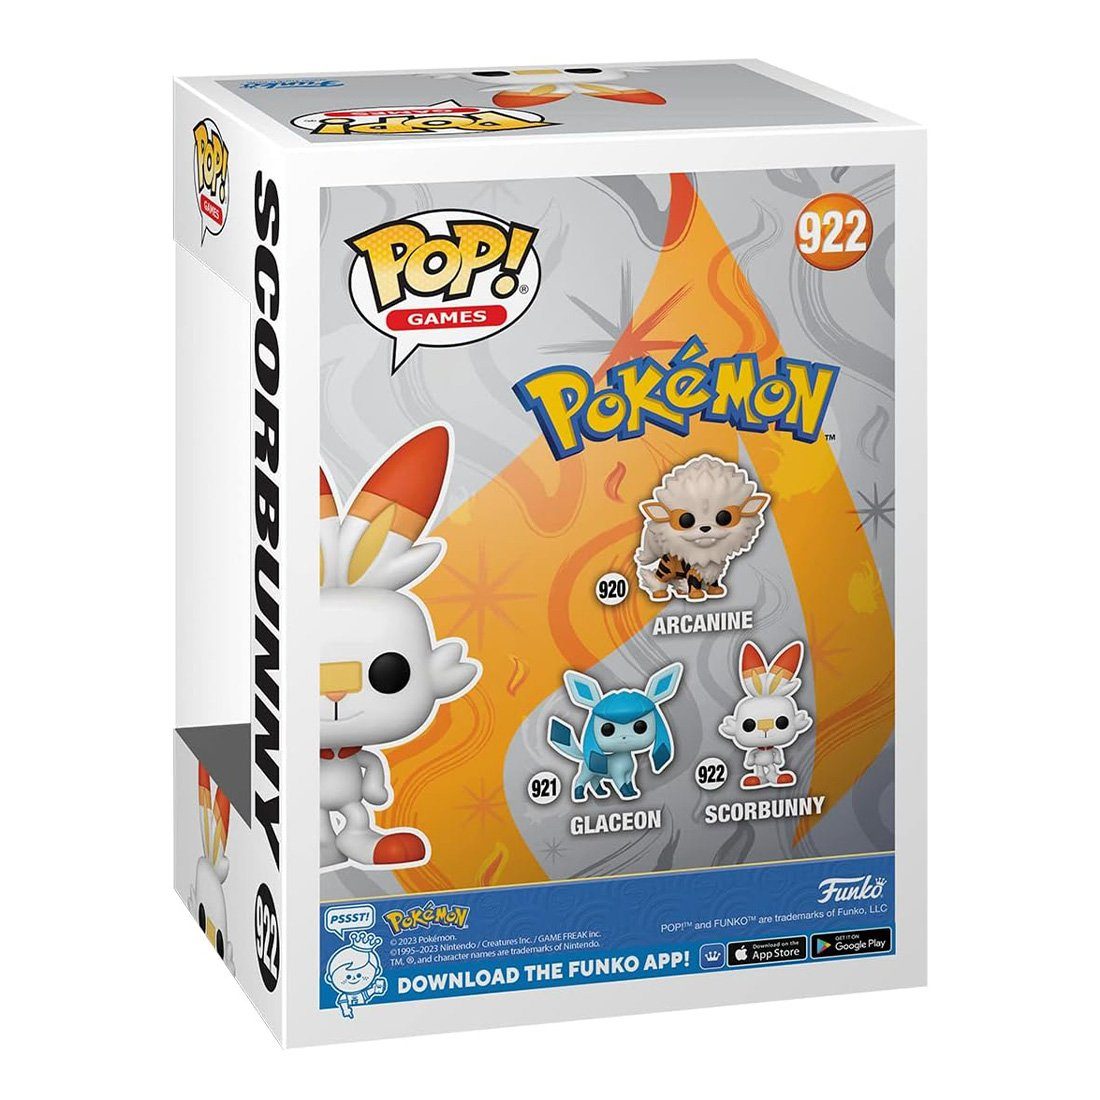 aus (Figur), POP! Pokémon Scorbunny, Typ von von 69081, Pokémon Funko Funko Figur Hopplo, POP Merchandise-Figur Feuer, Figur Funko Hopplo